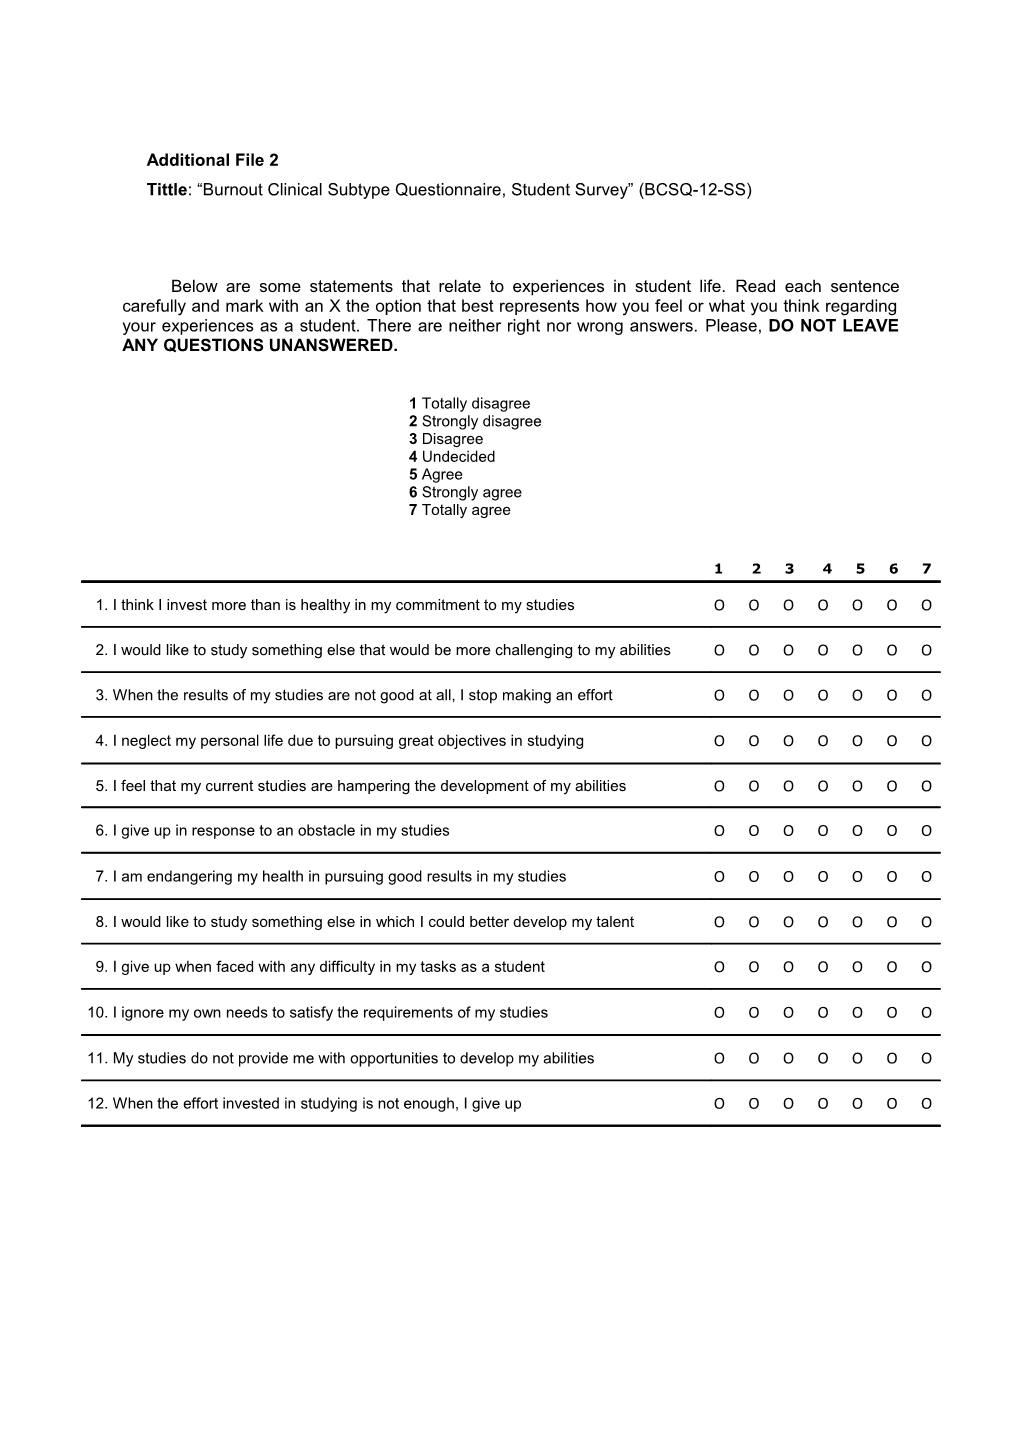 Tittle: Burnout Clinical Subtype Questionnaire, Student Survey (BCSQ-12-SS)